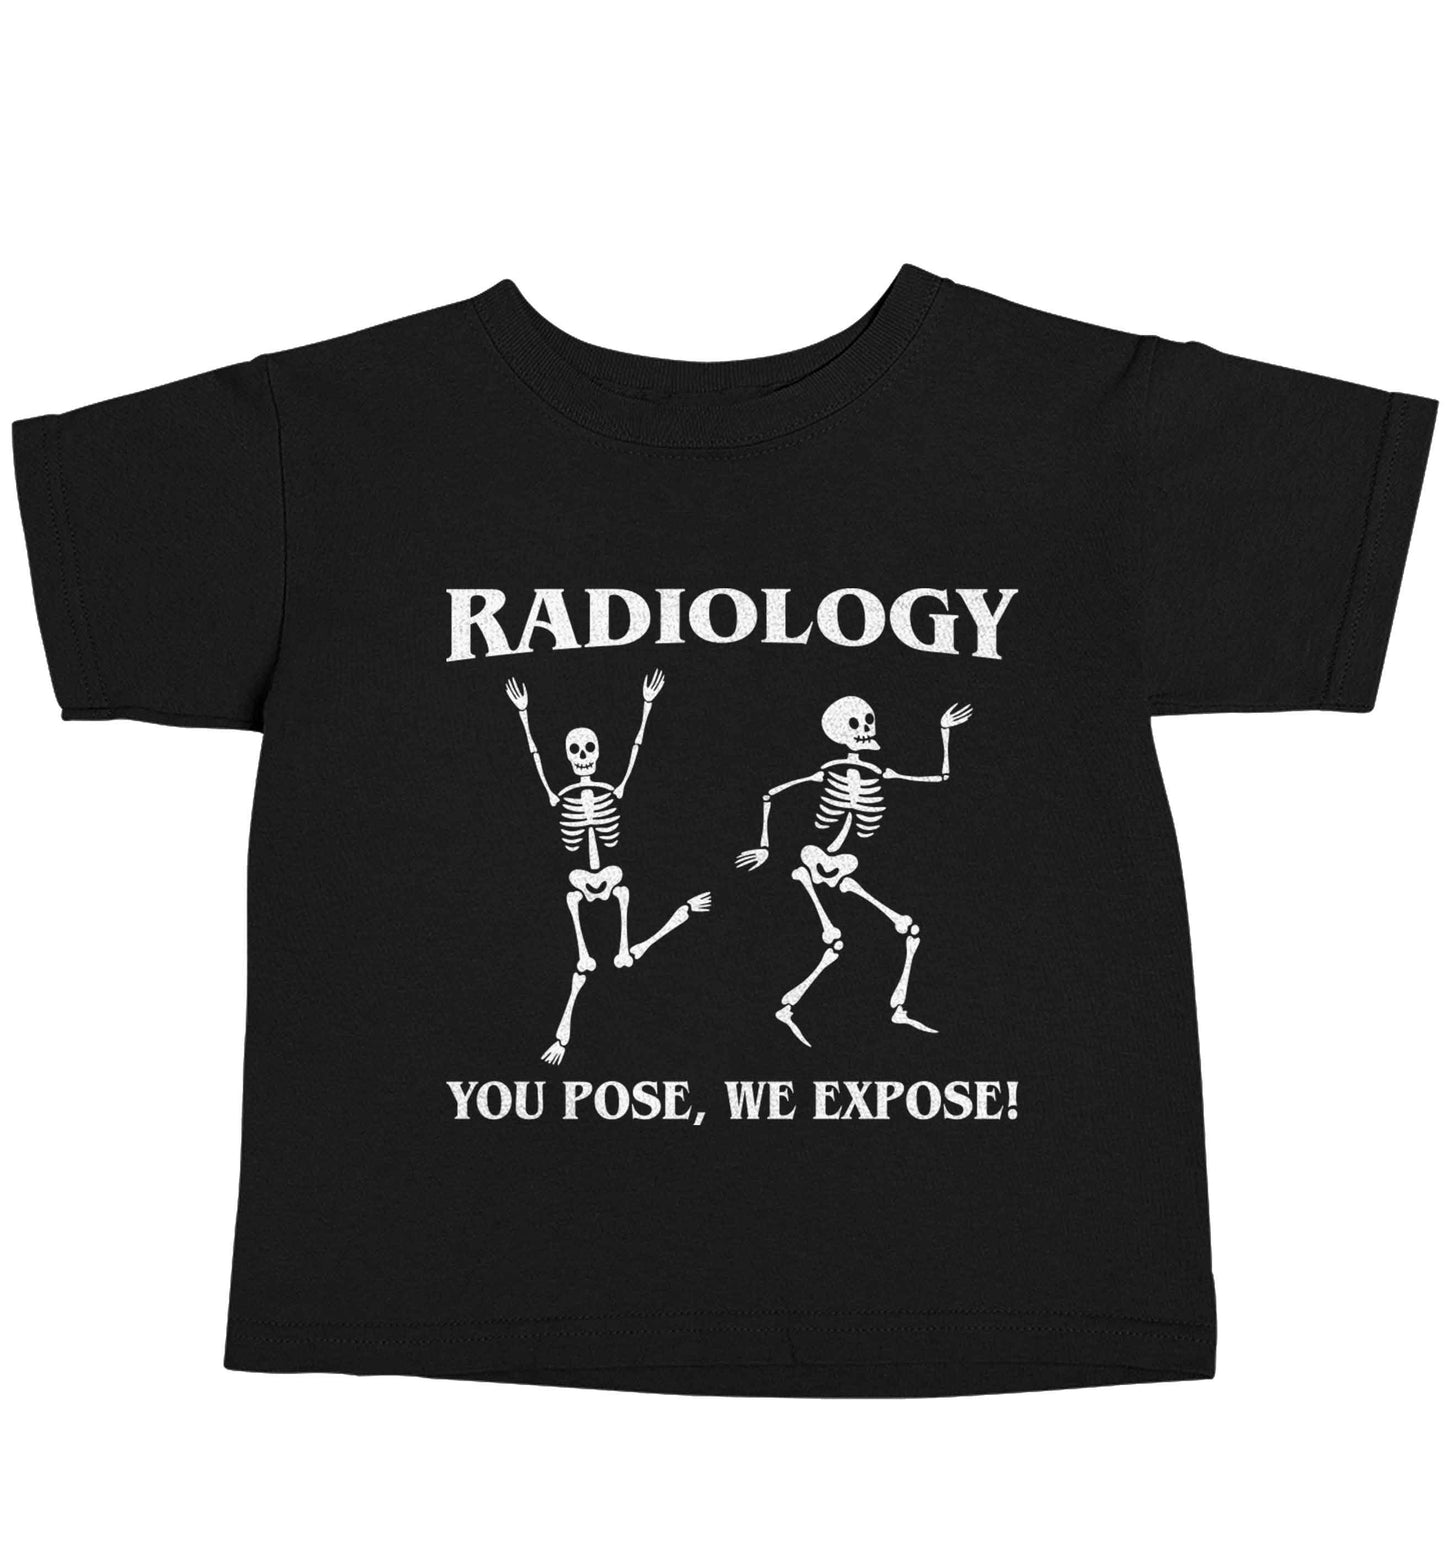 Radiology you pose we expose Black baby toddler Tshirt 2 years